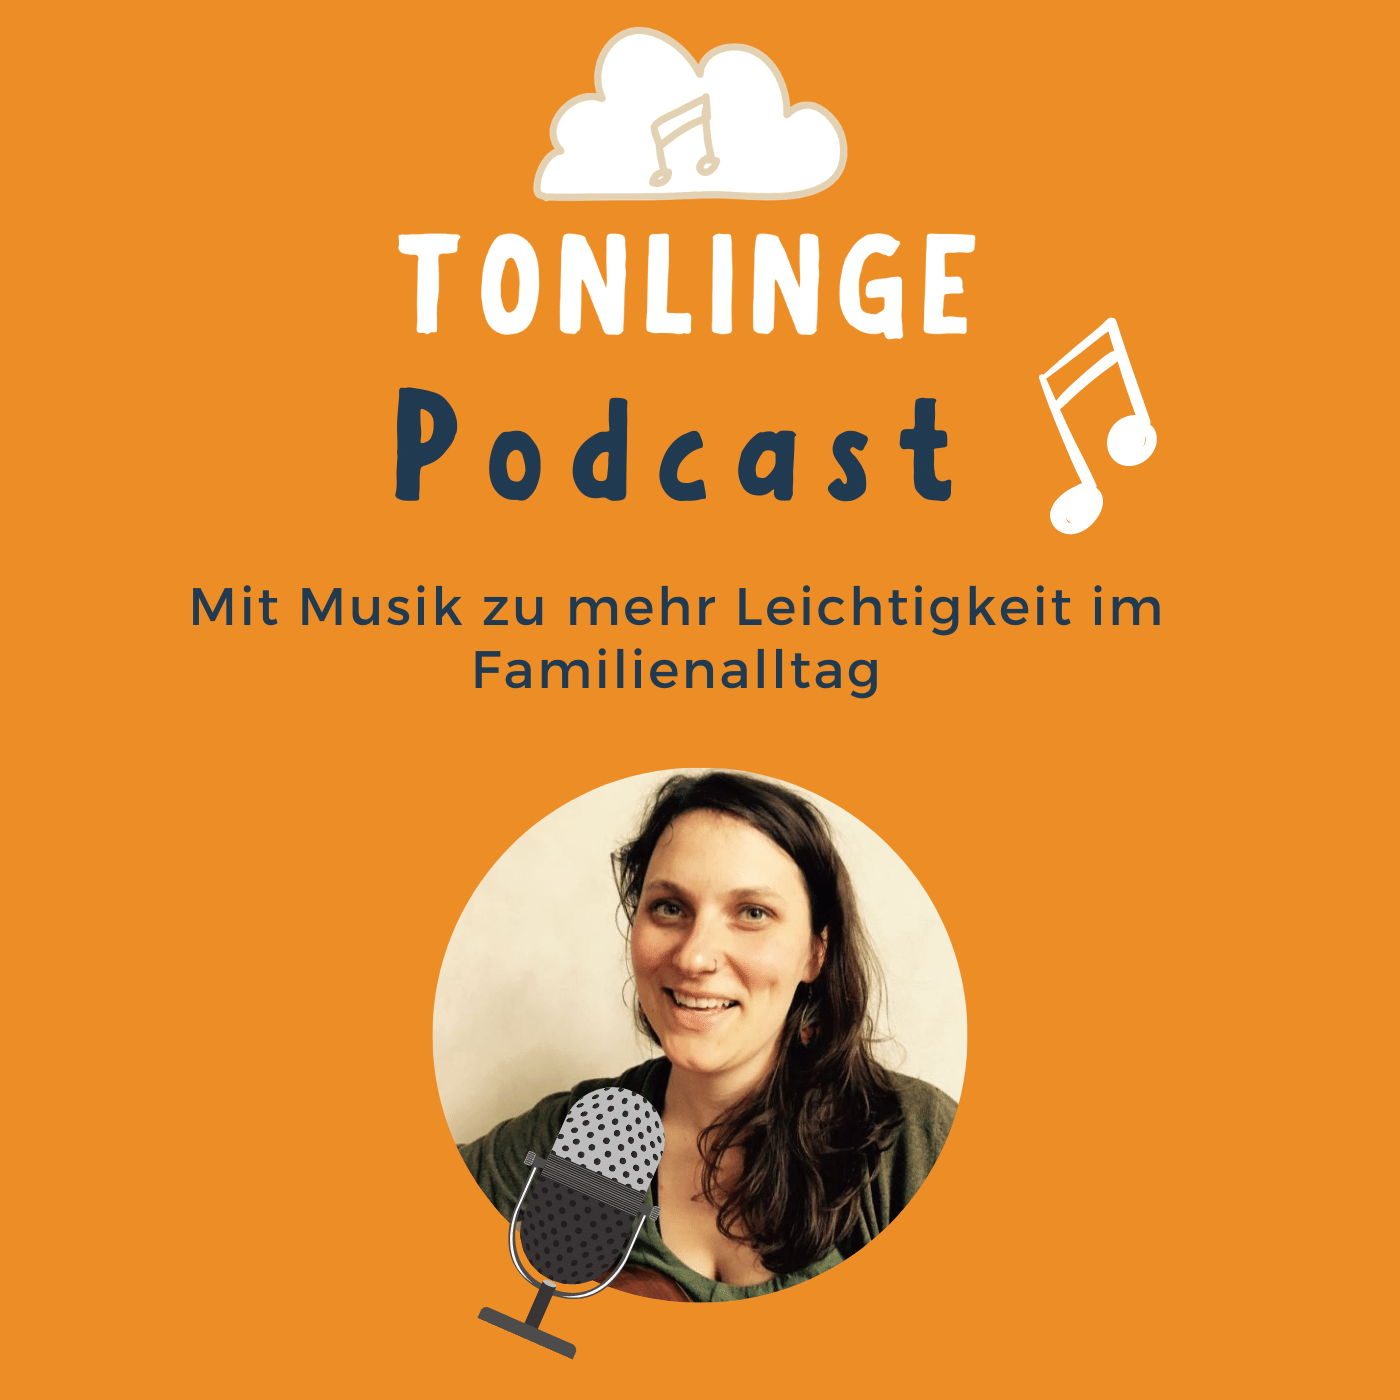 Der TONLINGE-Podcast mit Musik zu mehr Leichtigkeit im Familienalltag